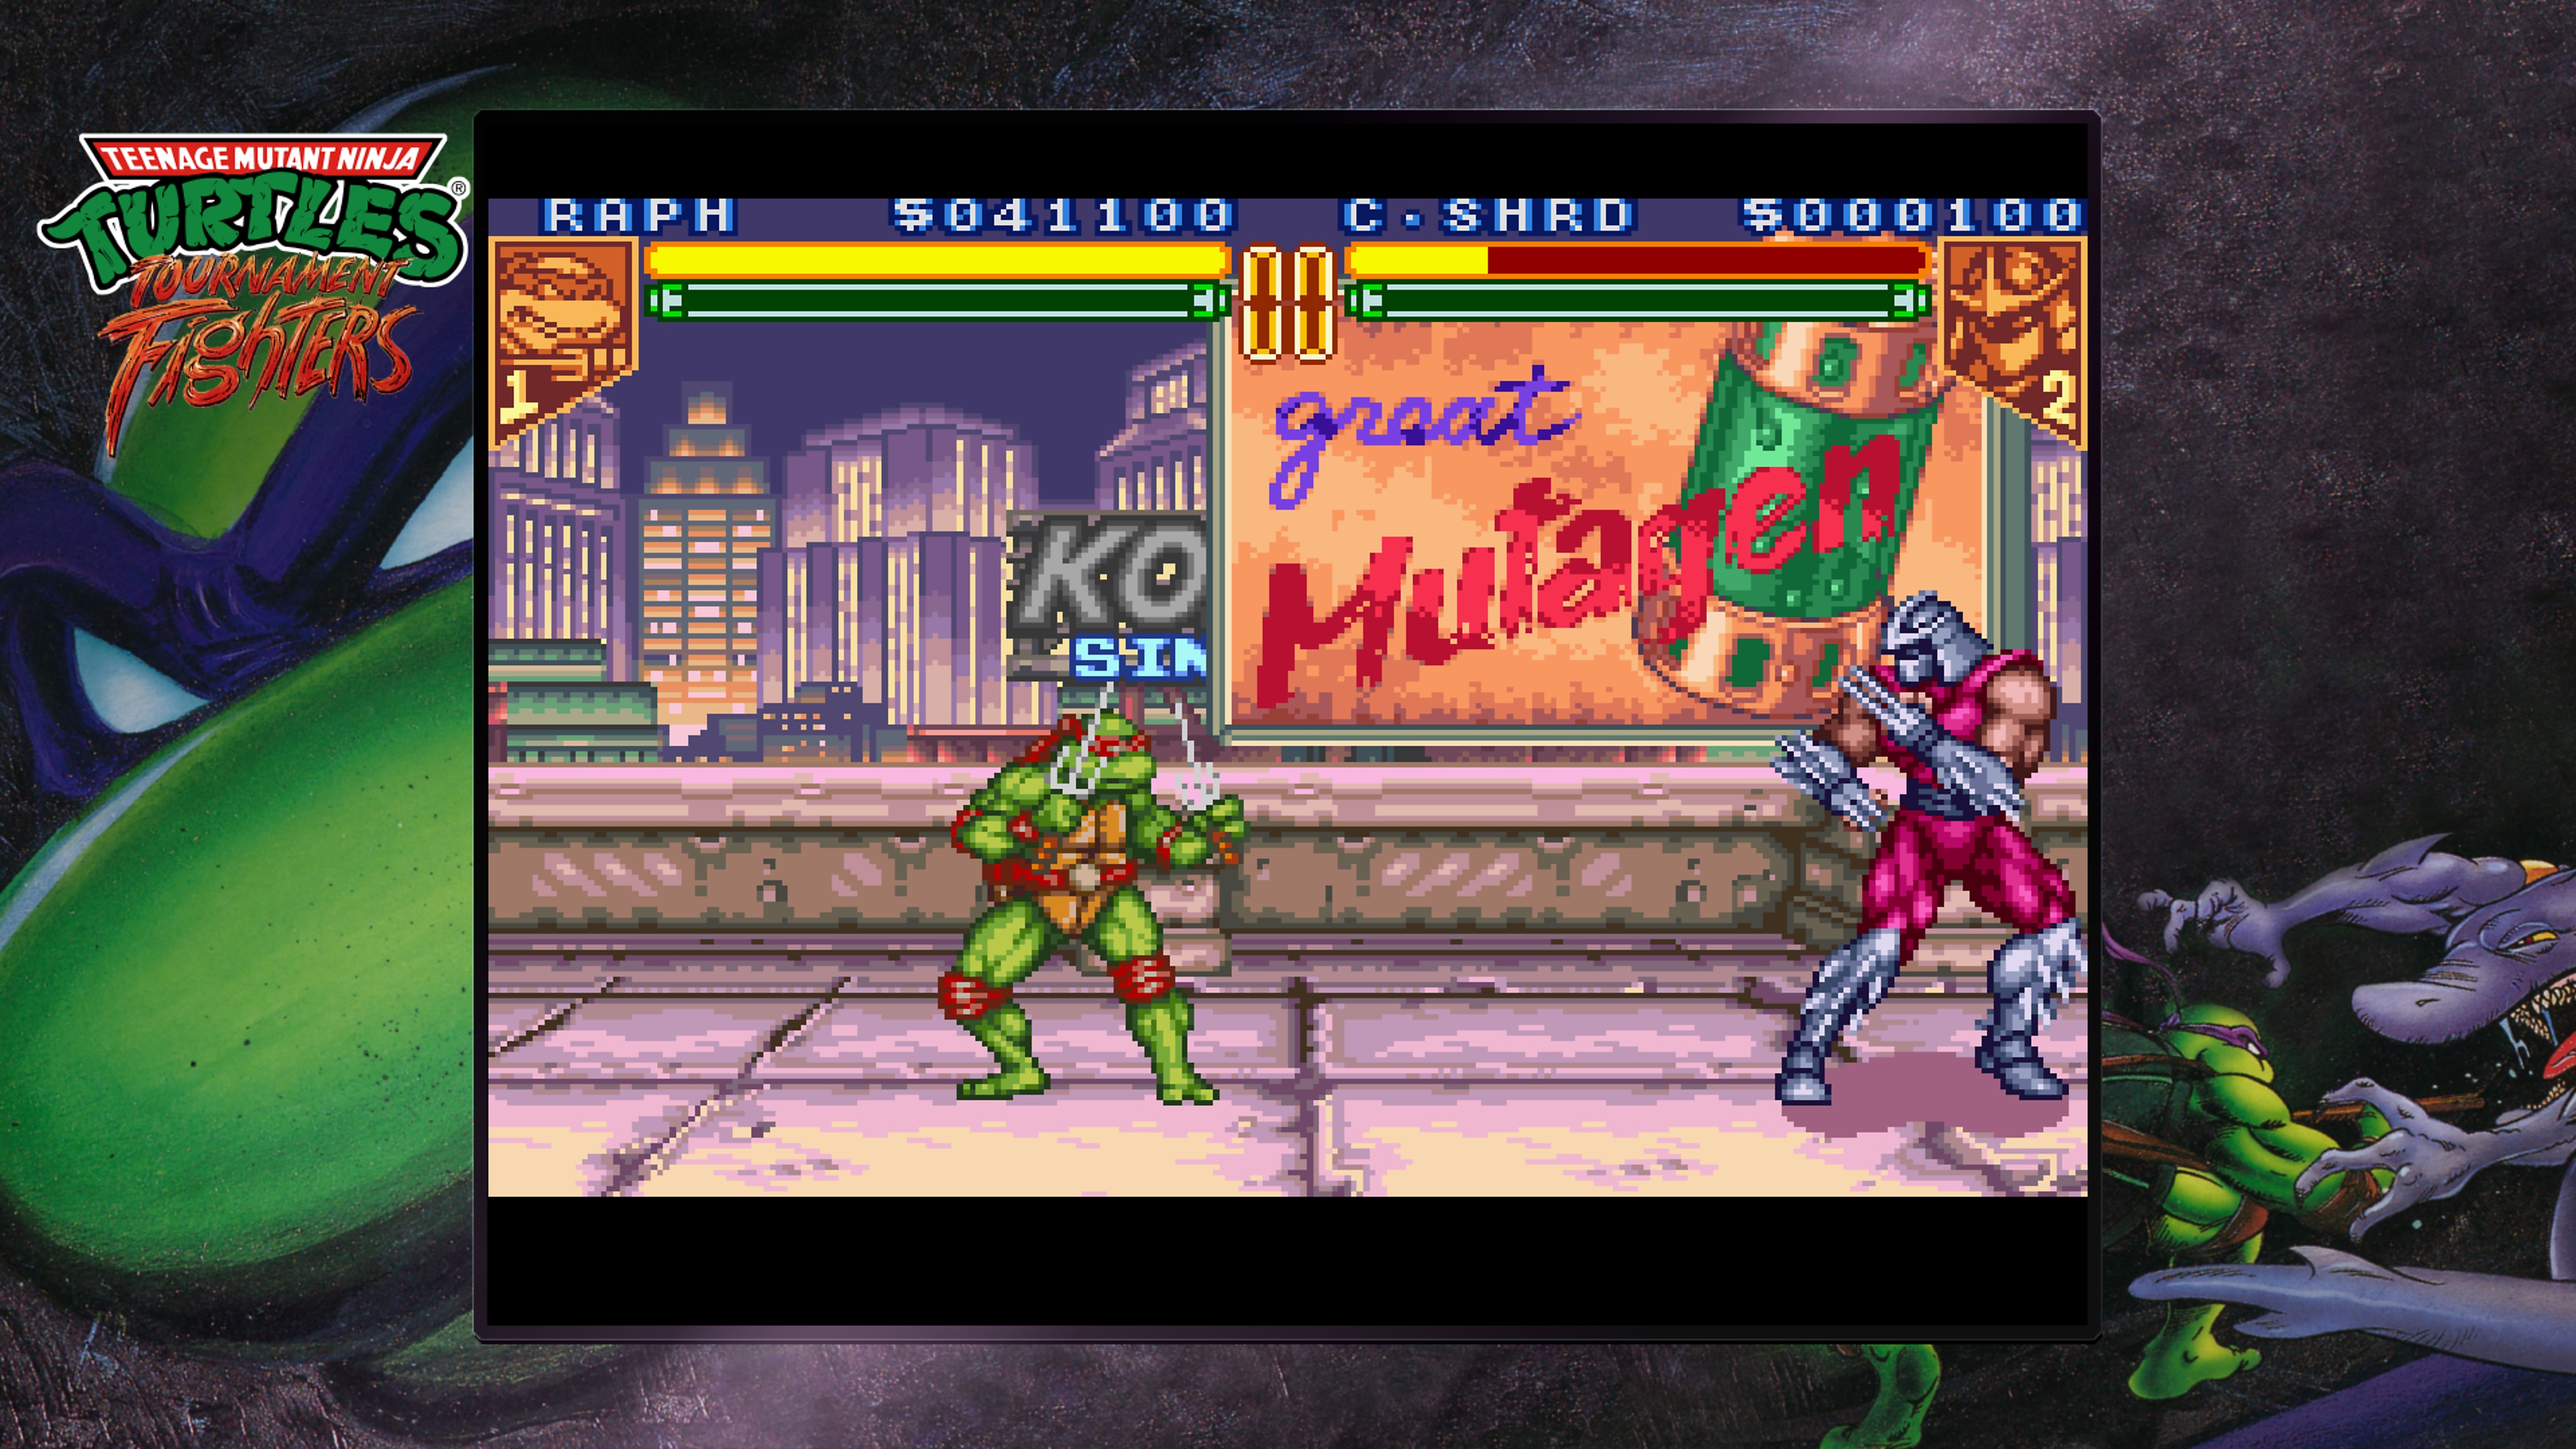 Teenage Mutant Ninja Turtles Collection – skärmbild från Tournament Fighters med Raphael som slåss mot Shredder på ett tak